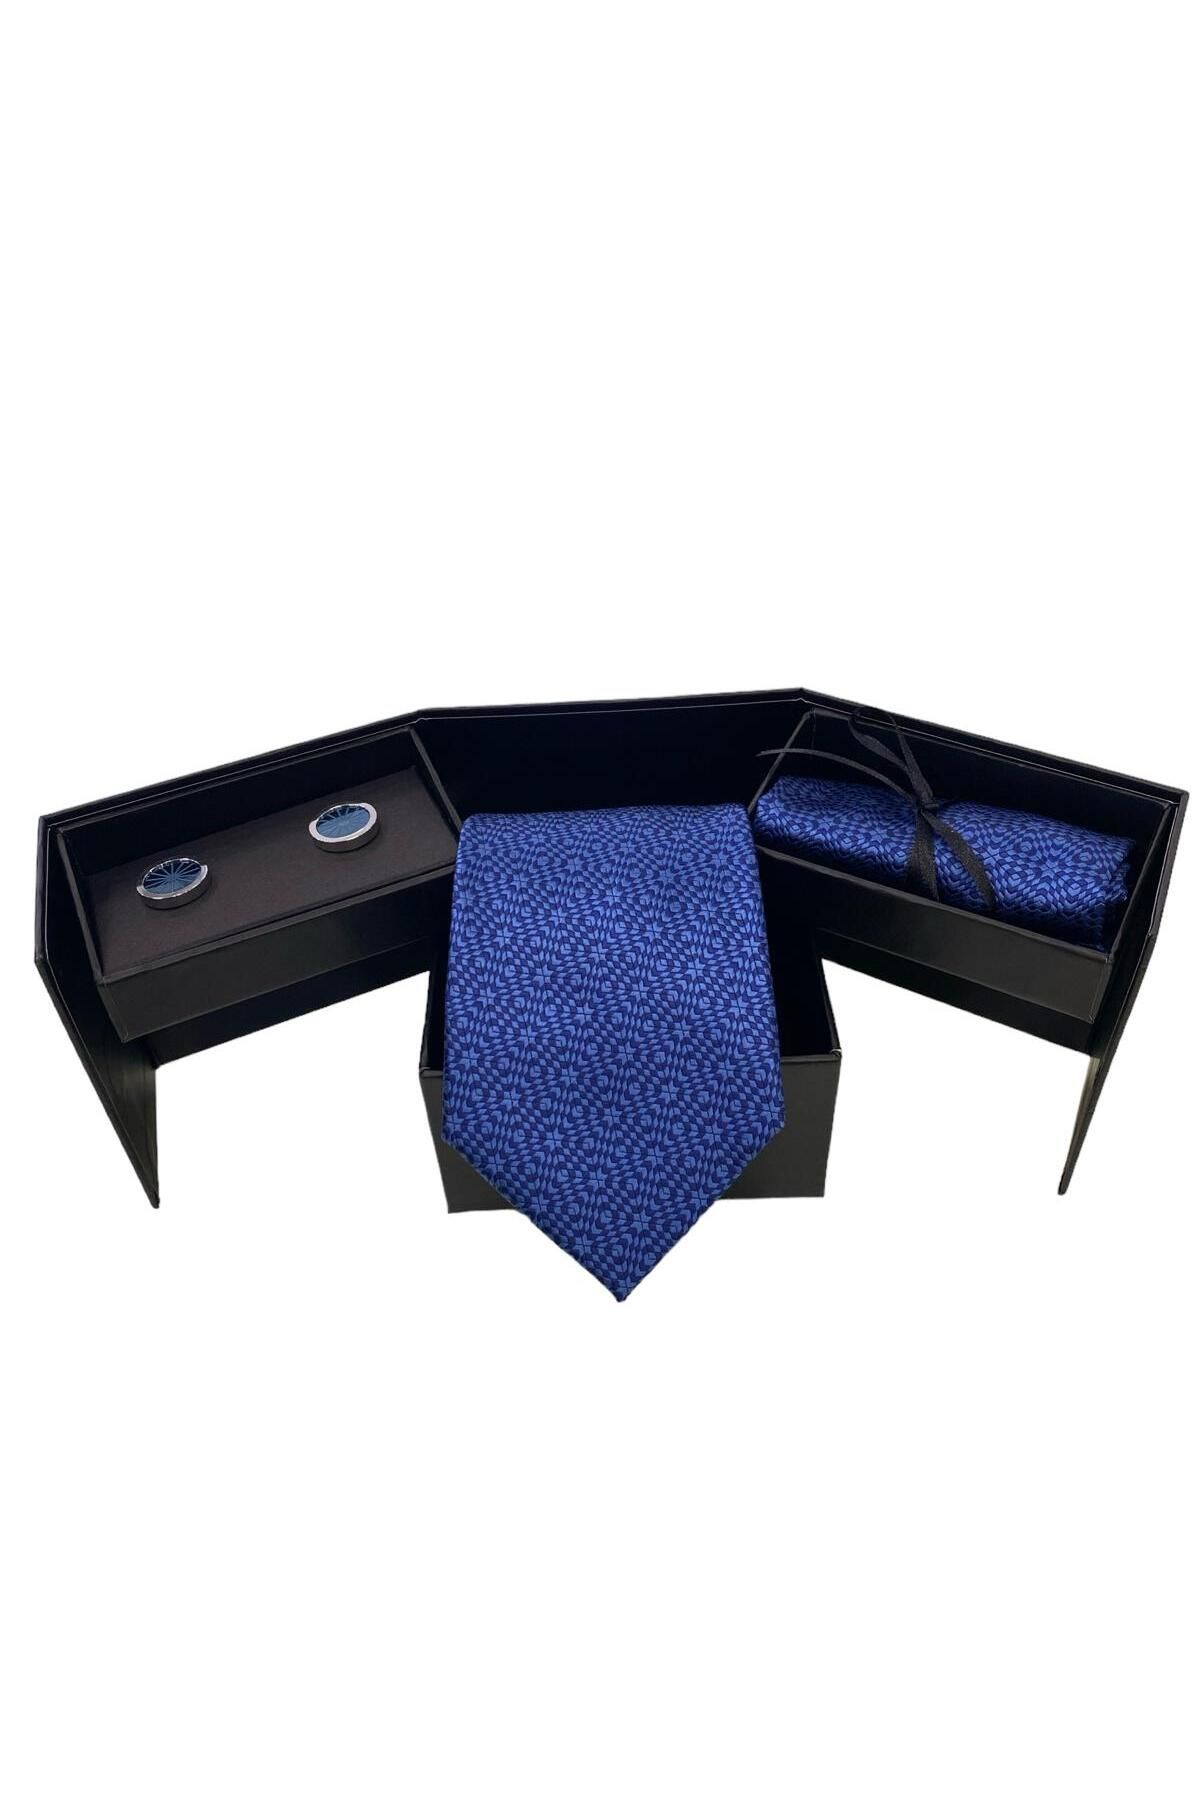 Sarar Geometrik Desen Koyu Mavi Kravat Mendil Kol Düğmesi Set